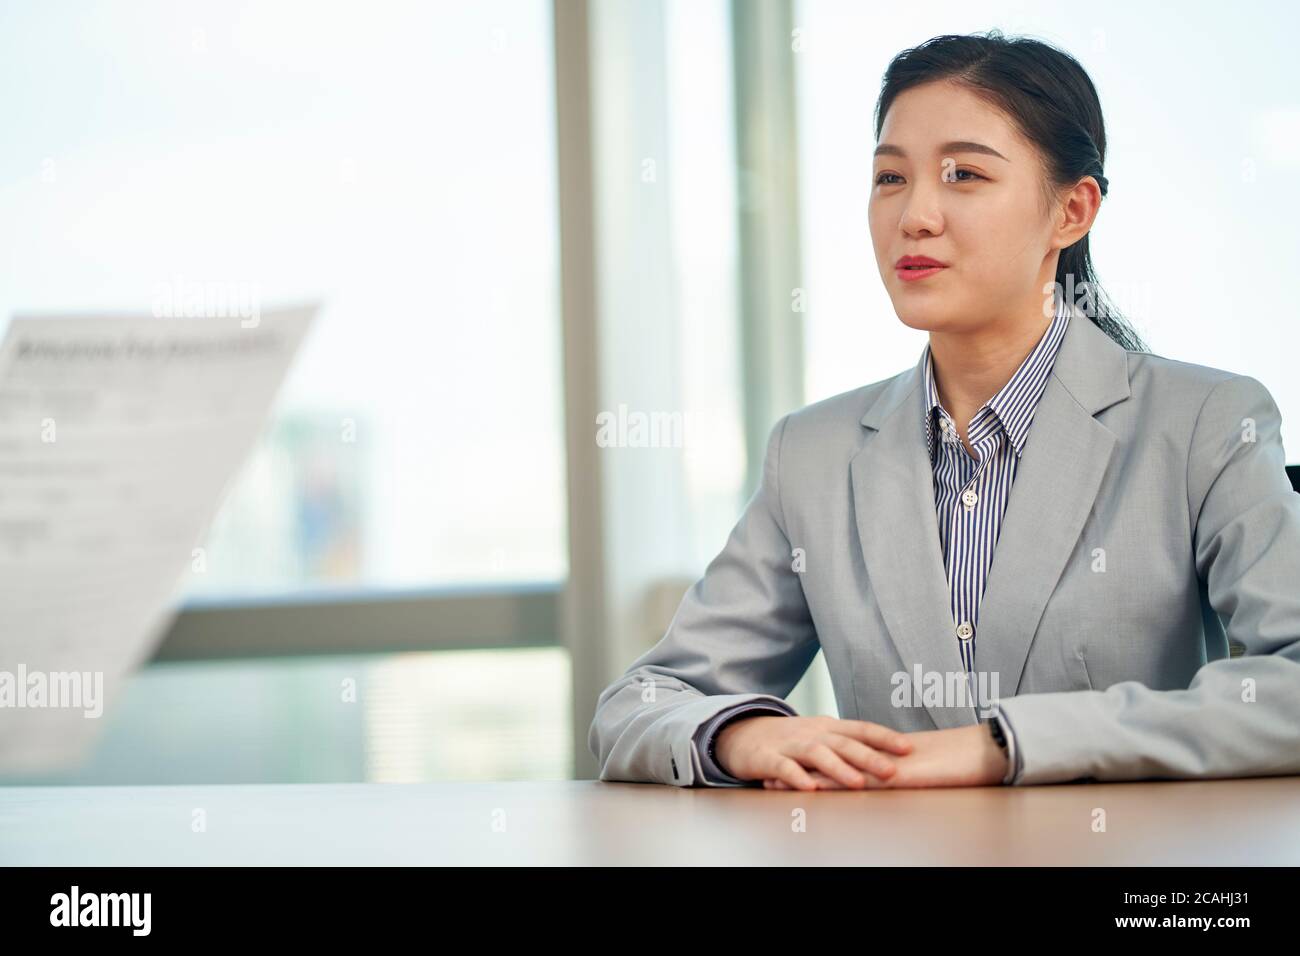 giovane donna asiatica in cerca di lavoro che parla con l'intervistatore durante il colloquio di lavoro Foto Stock